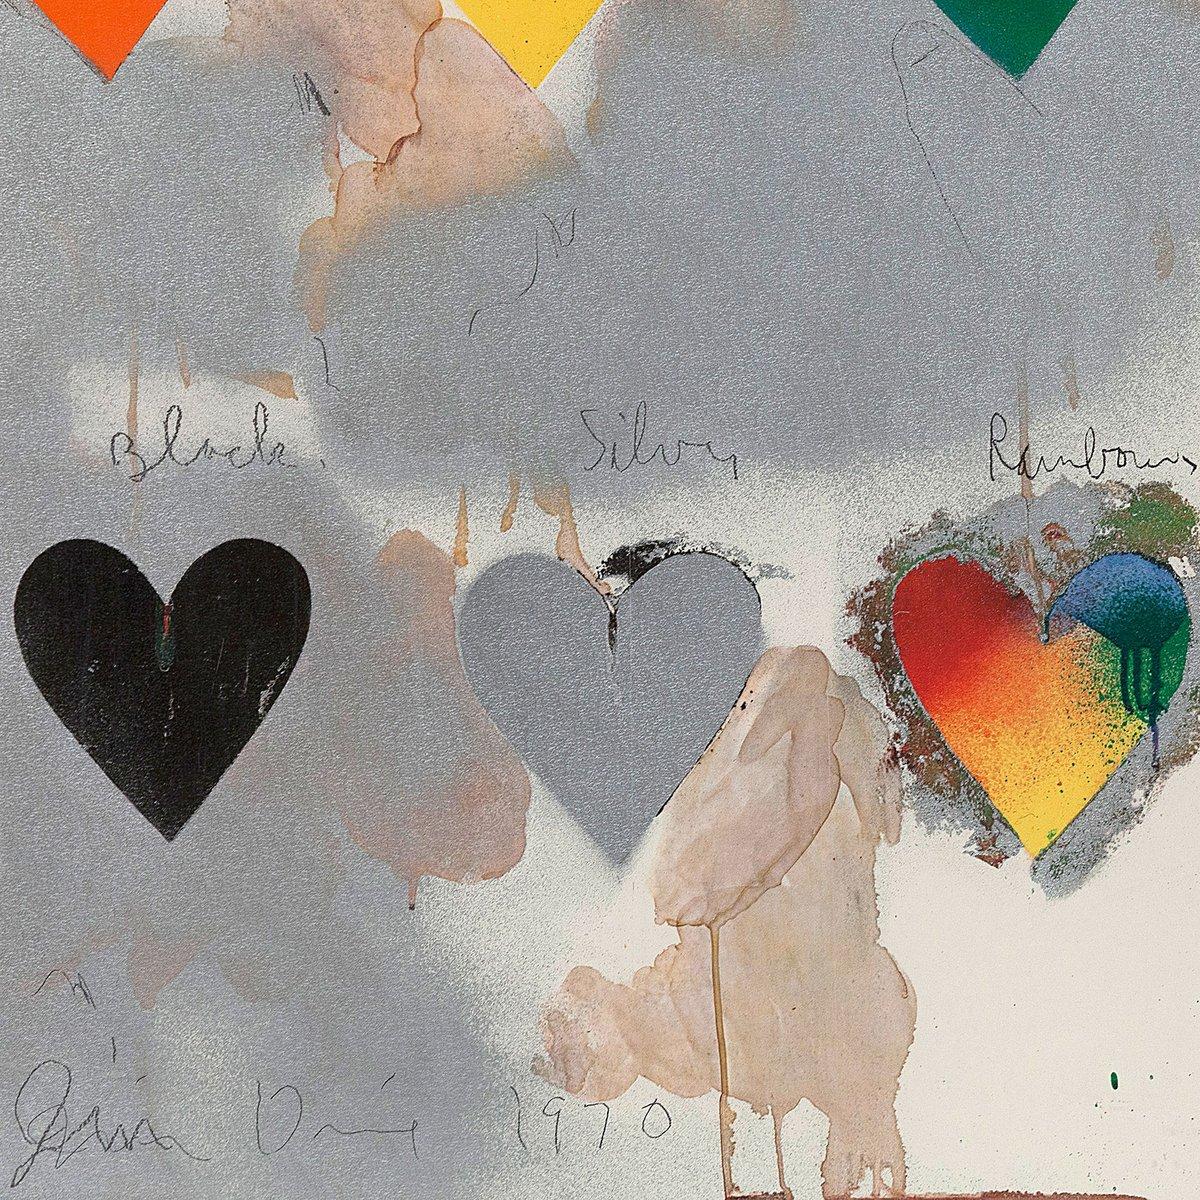 8 Hearts / Look, lithographie off-set avec superposition de collages de papier métallique, 1970 6